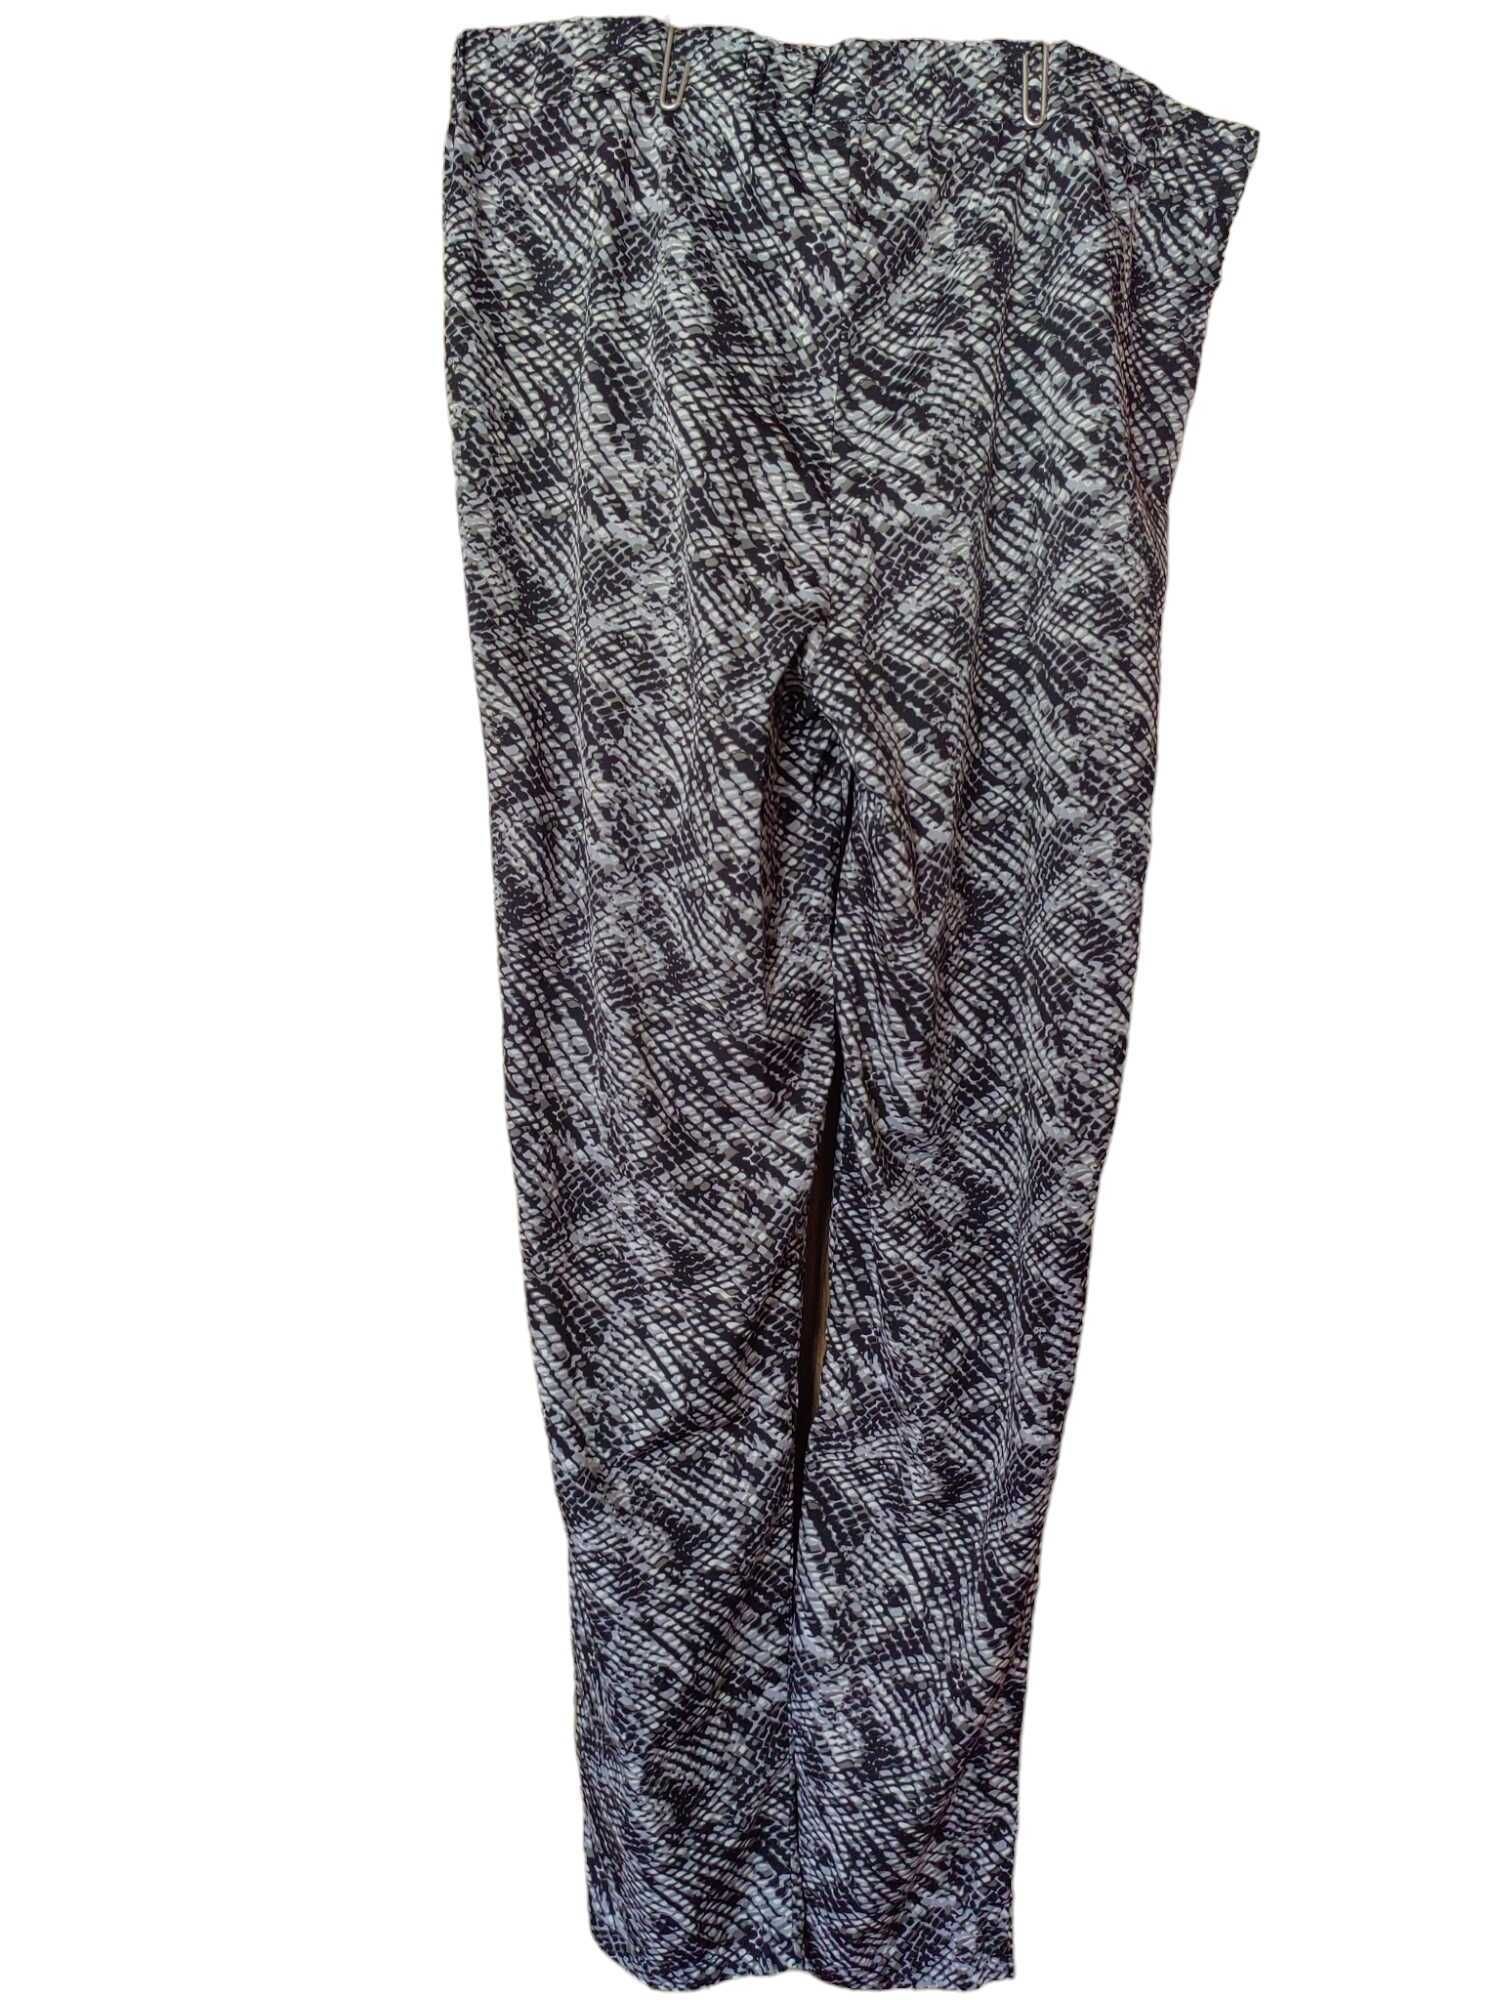 Дамски летен панталон със животинска щампа, 104х44 см, 36